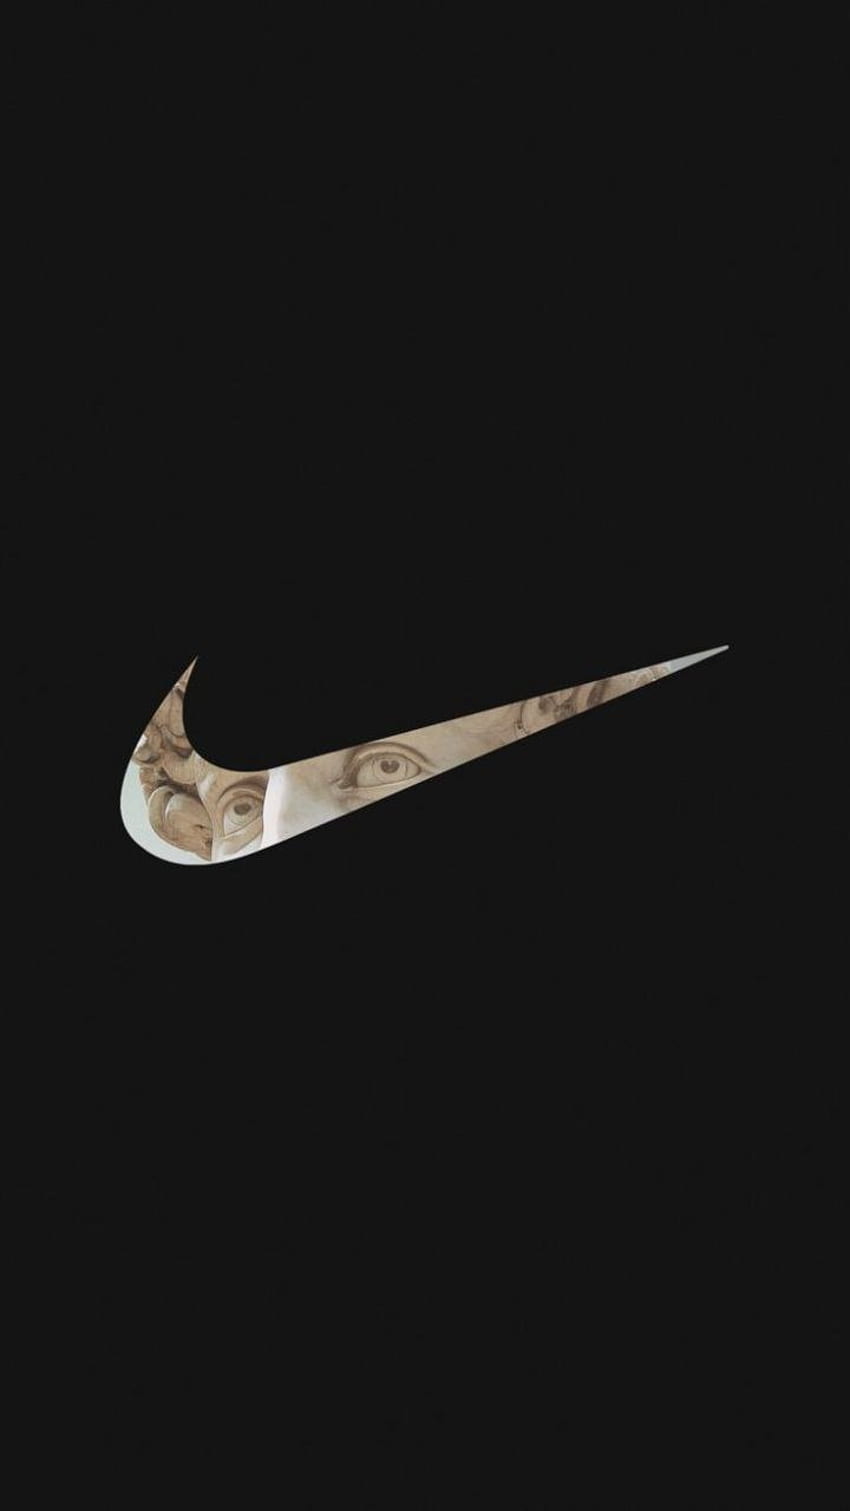 Bạn yêu thích thương hiệu Nike và cũng đam mê nghệ thuật? Hãy đến với chúng tôi để khám phá bộ sưu tập Nike Art Tableware độc đáo. Chắc chắn bạn sẽ bị cuốn hút bởi những sản phẩm tinh tế và đầy sáng tạo này.